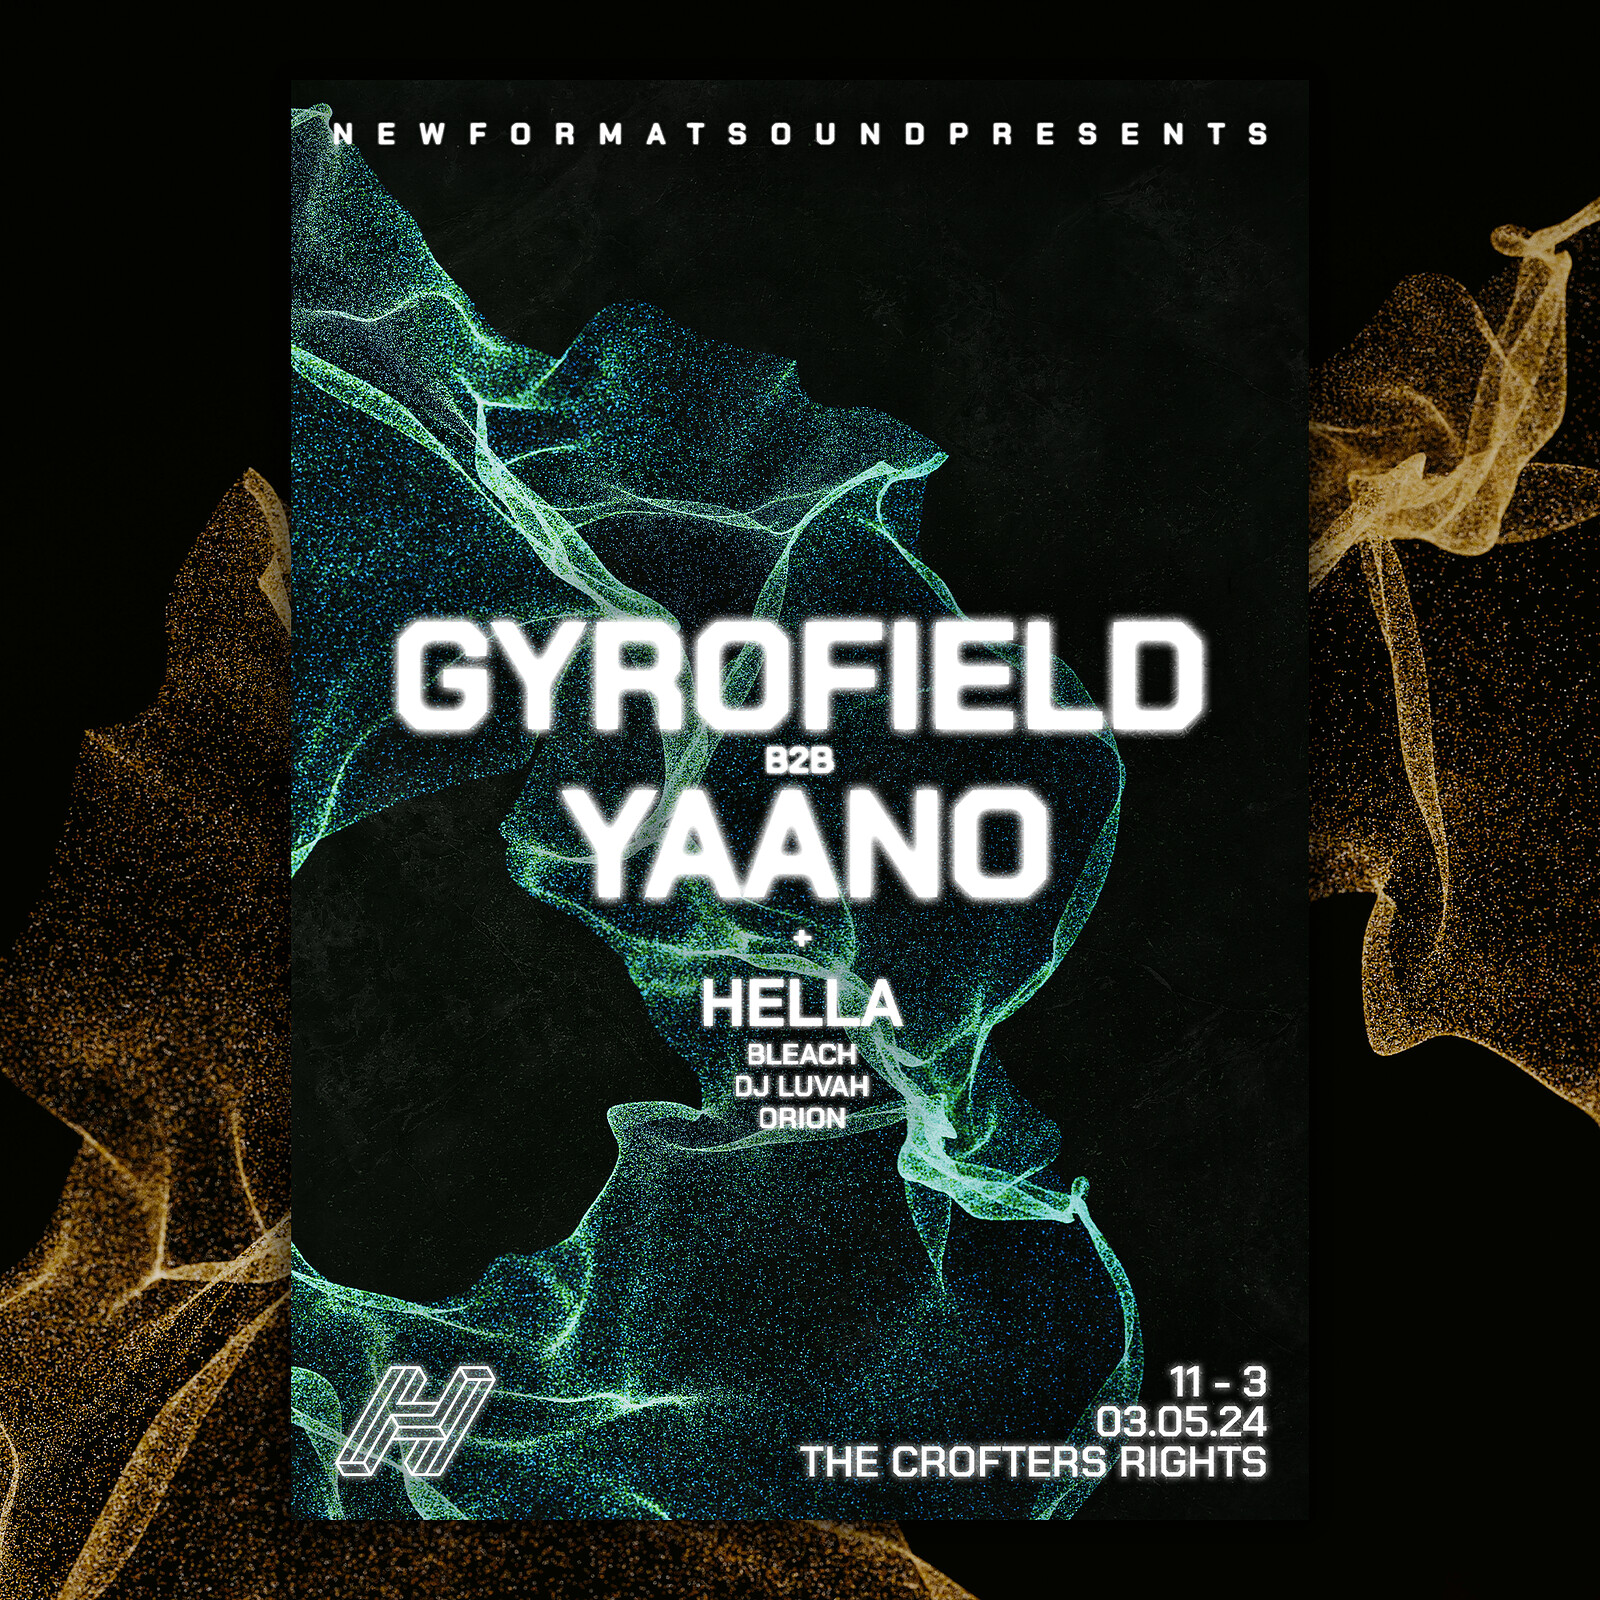 New Format Sound: Gyrofield b2b YAANO at Crofters Rights